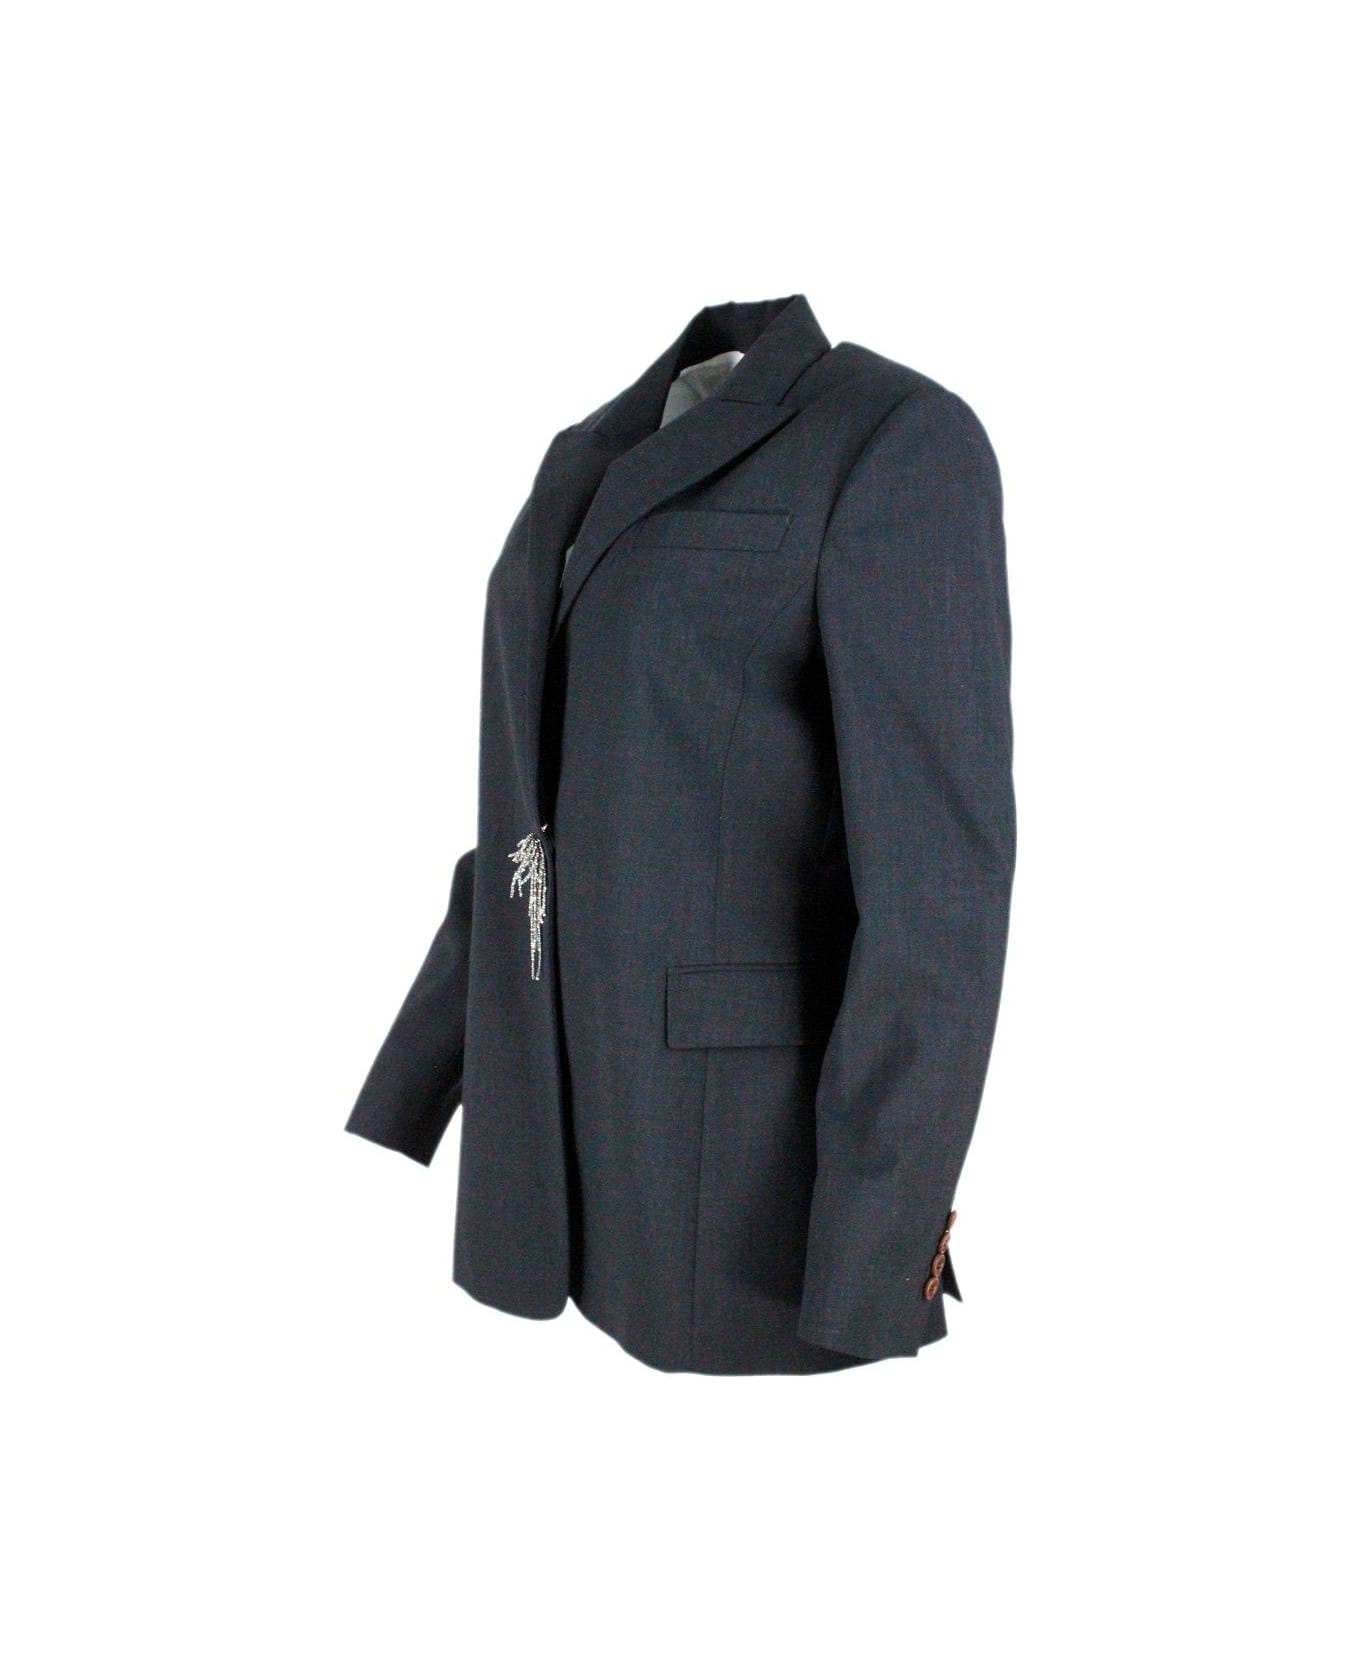 Brunello Cucinelli Pin Embellished Tailored Blazer - Grey Dark